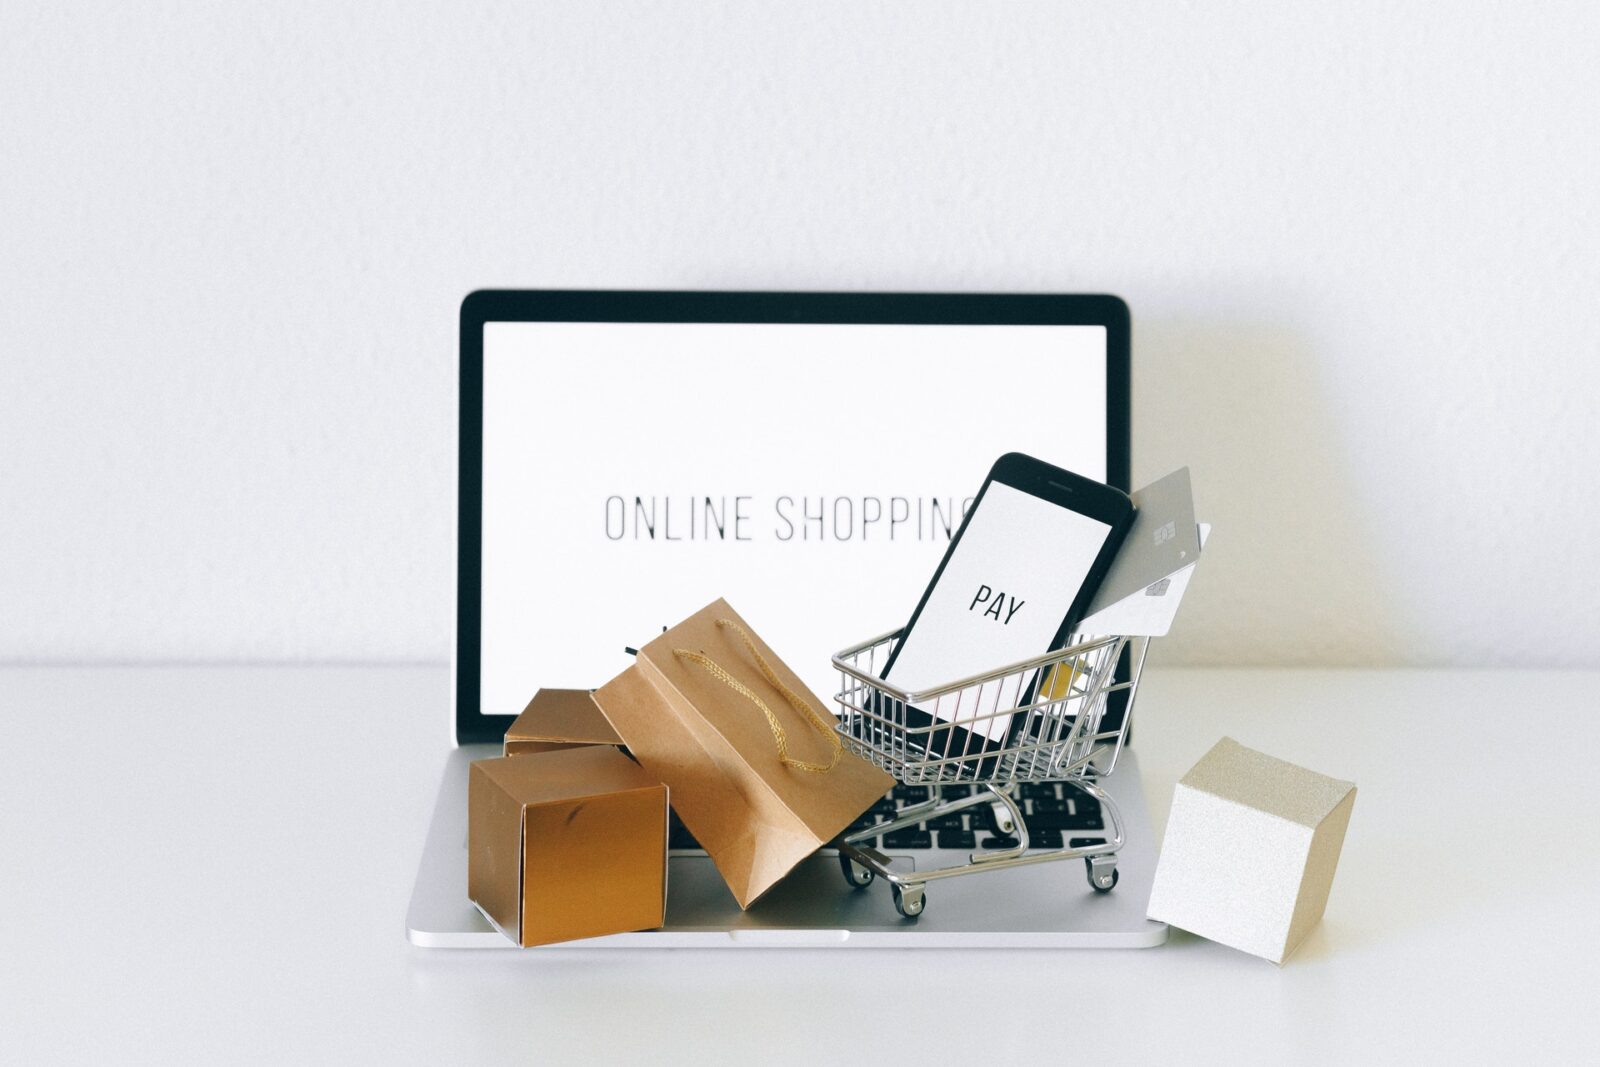 Customer segments in e-commerce